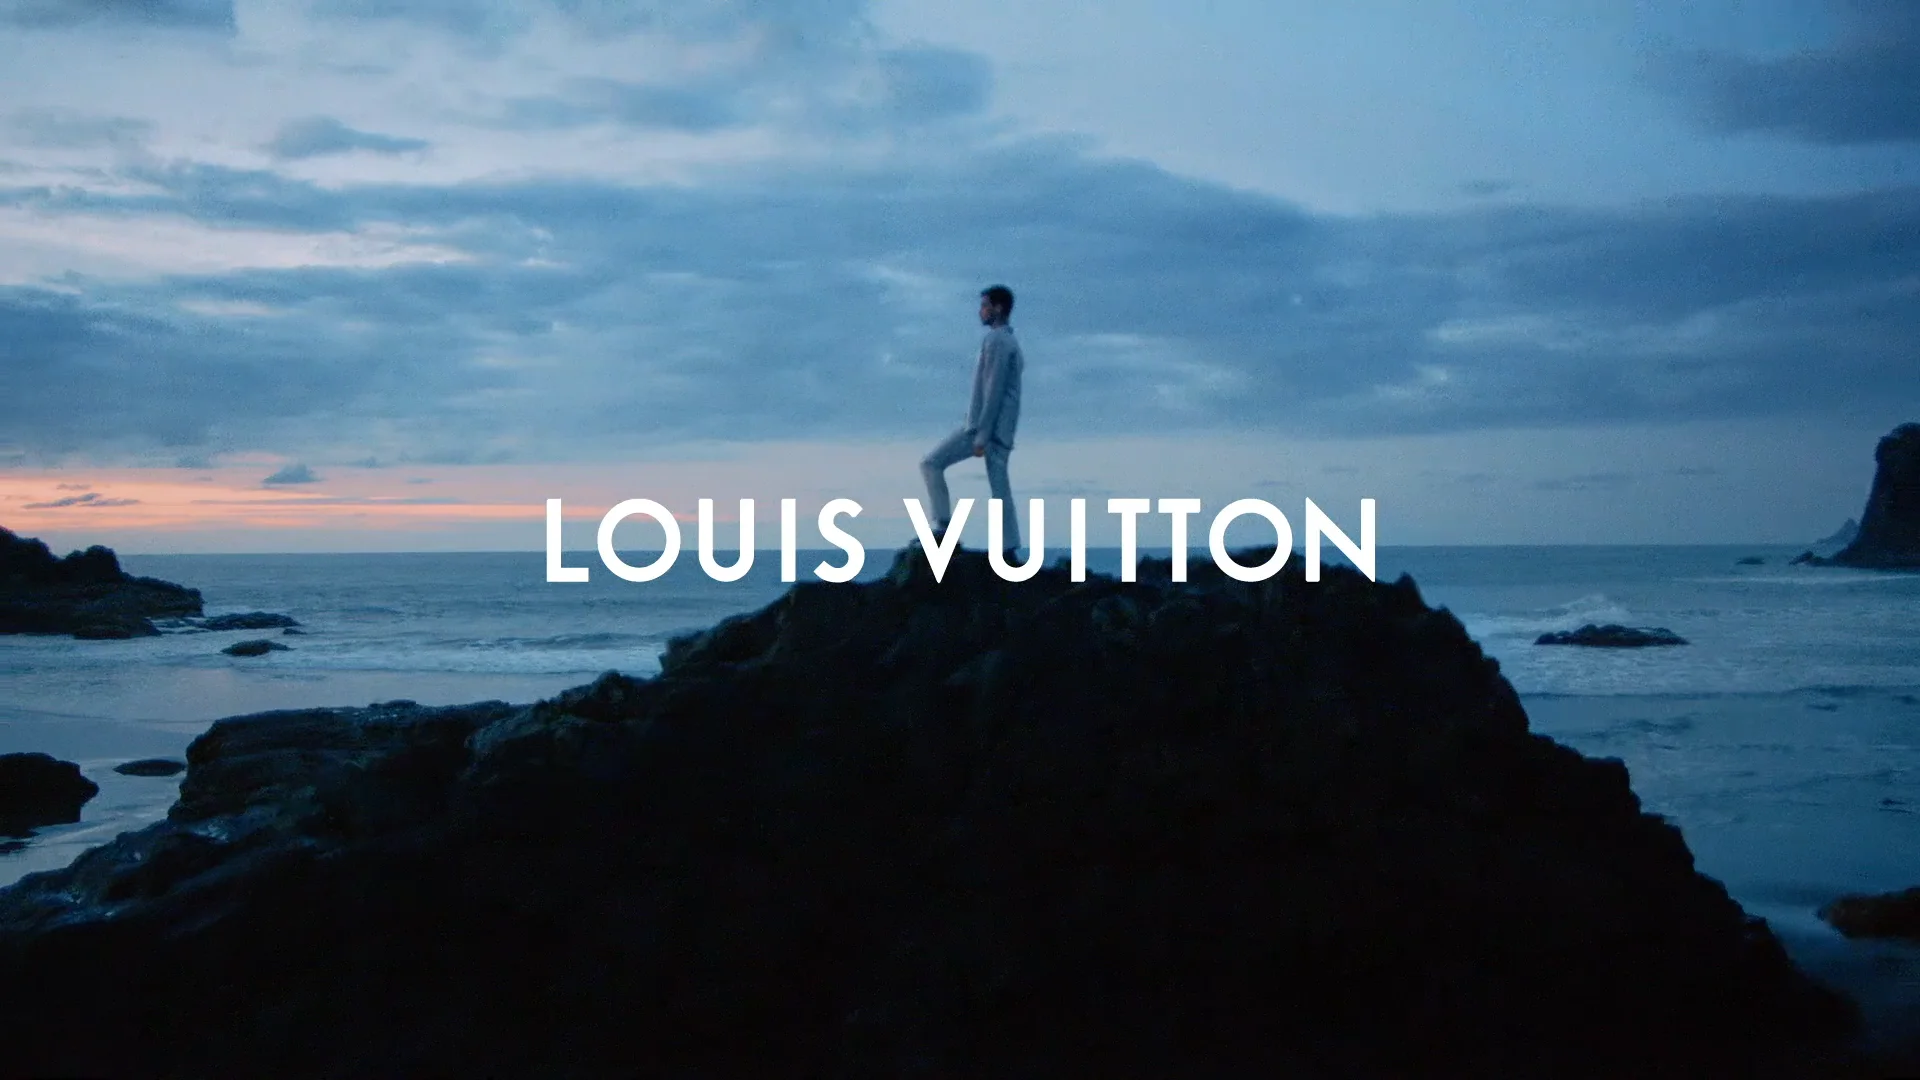 Louis Vuitton Imagination on Vimeo